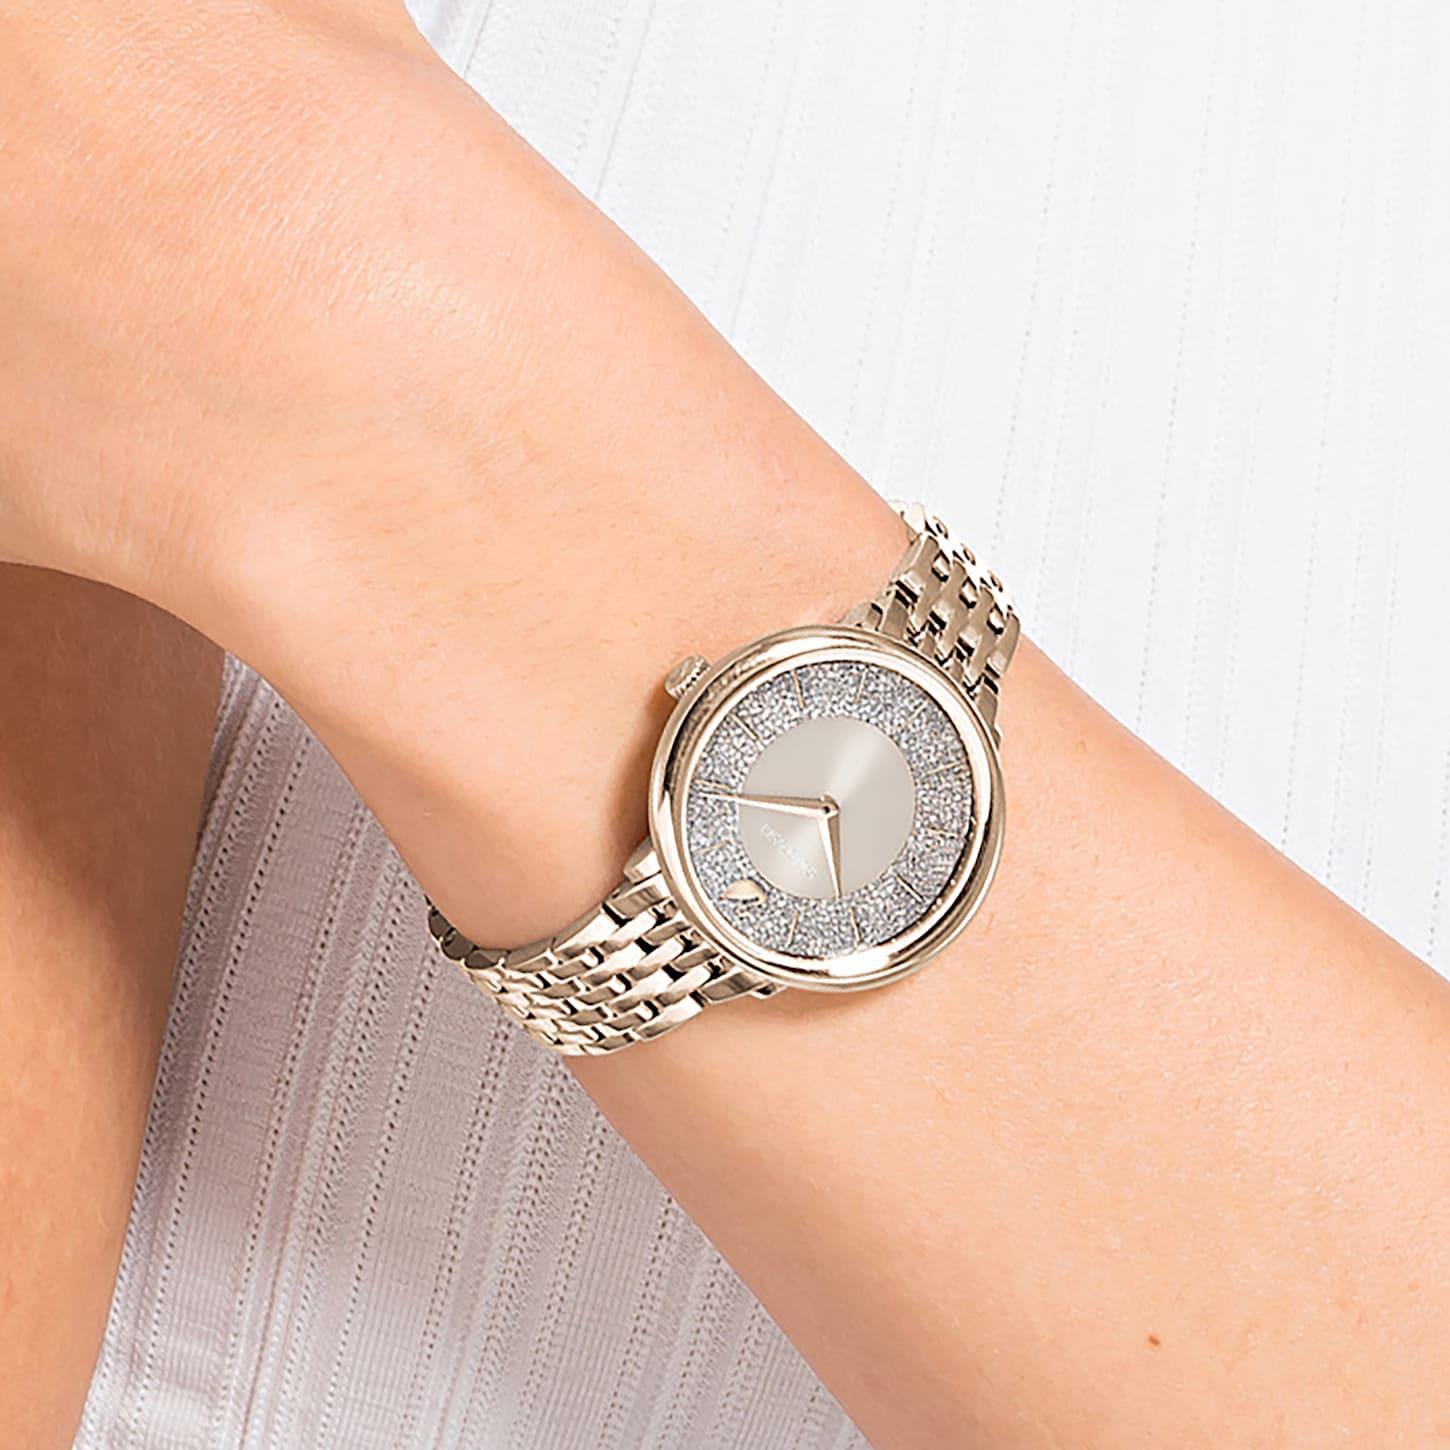 Swarovski 5547611 Crystalline Metal Bracelet Gold Tone Women's Watch